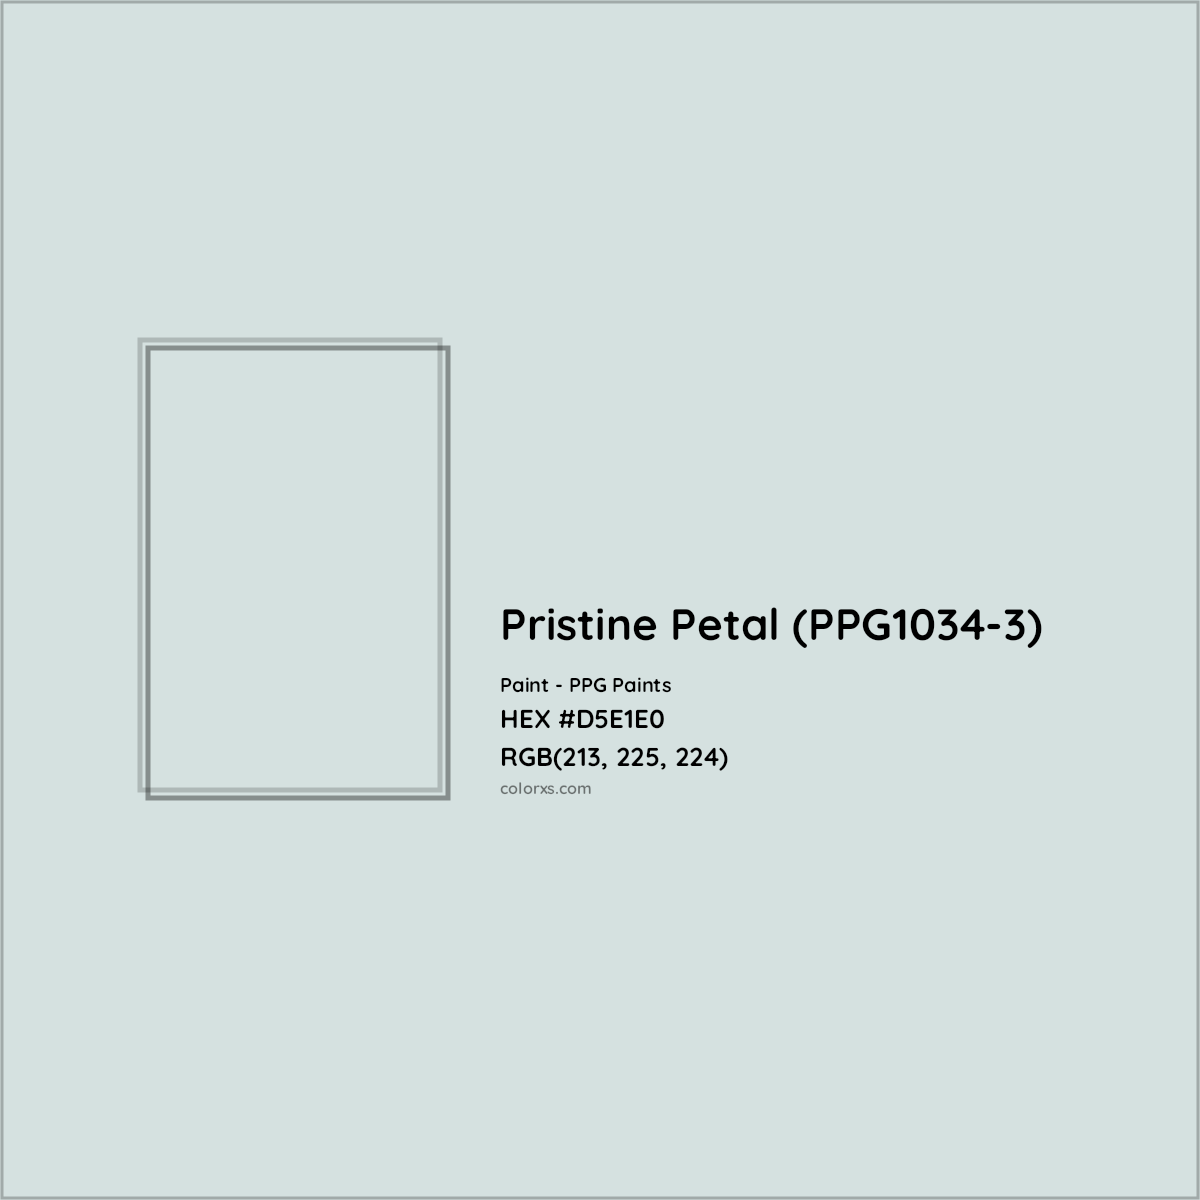 HEX #D5E1E0 Pristine Petal (PPG1034-3) Paint PPG Paints - Color Code